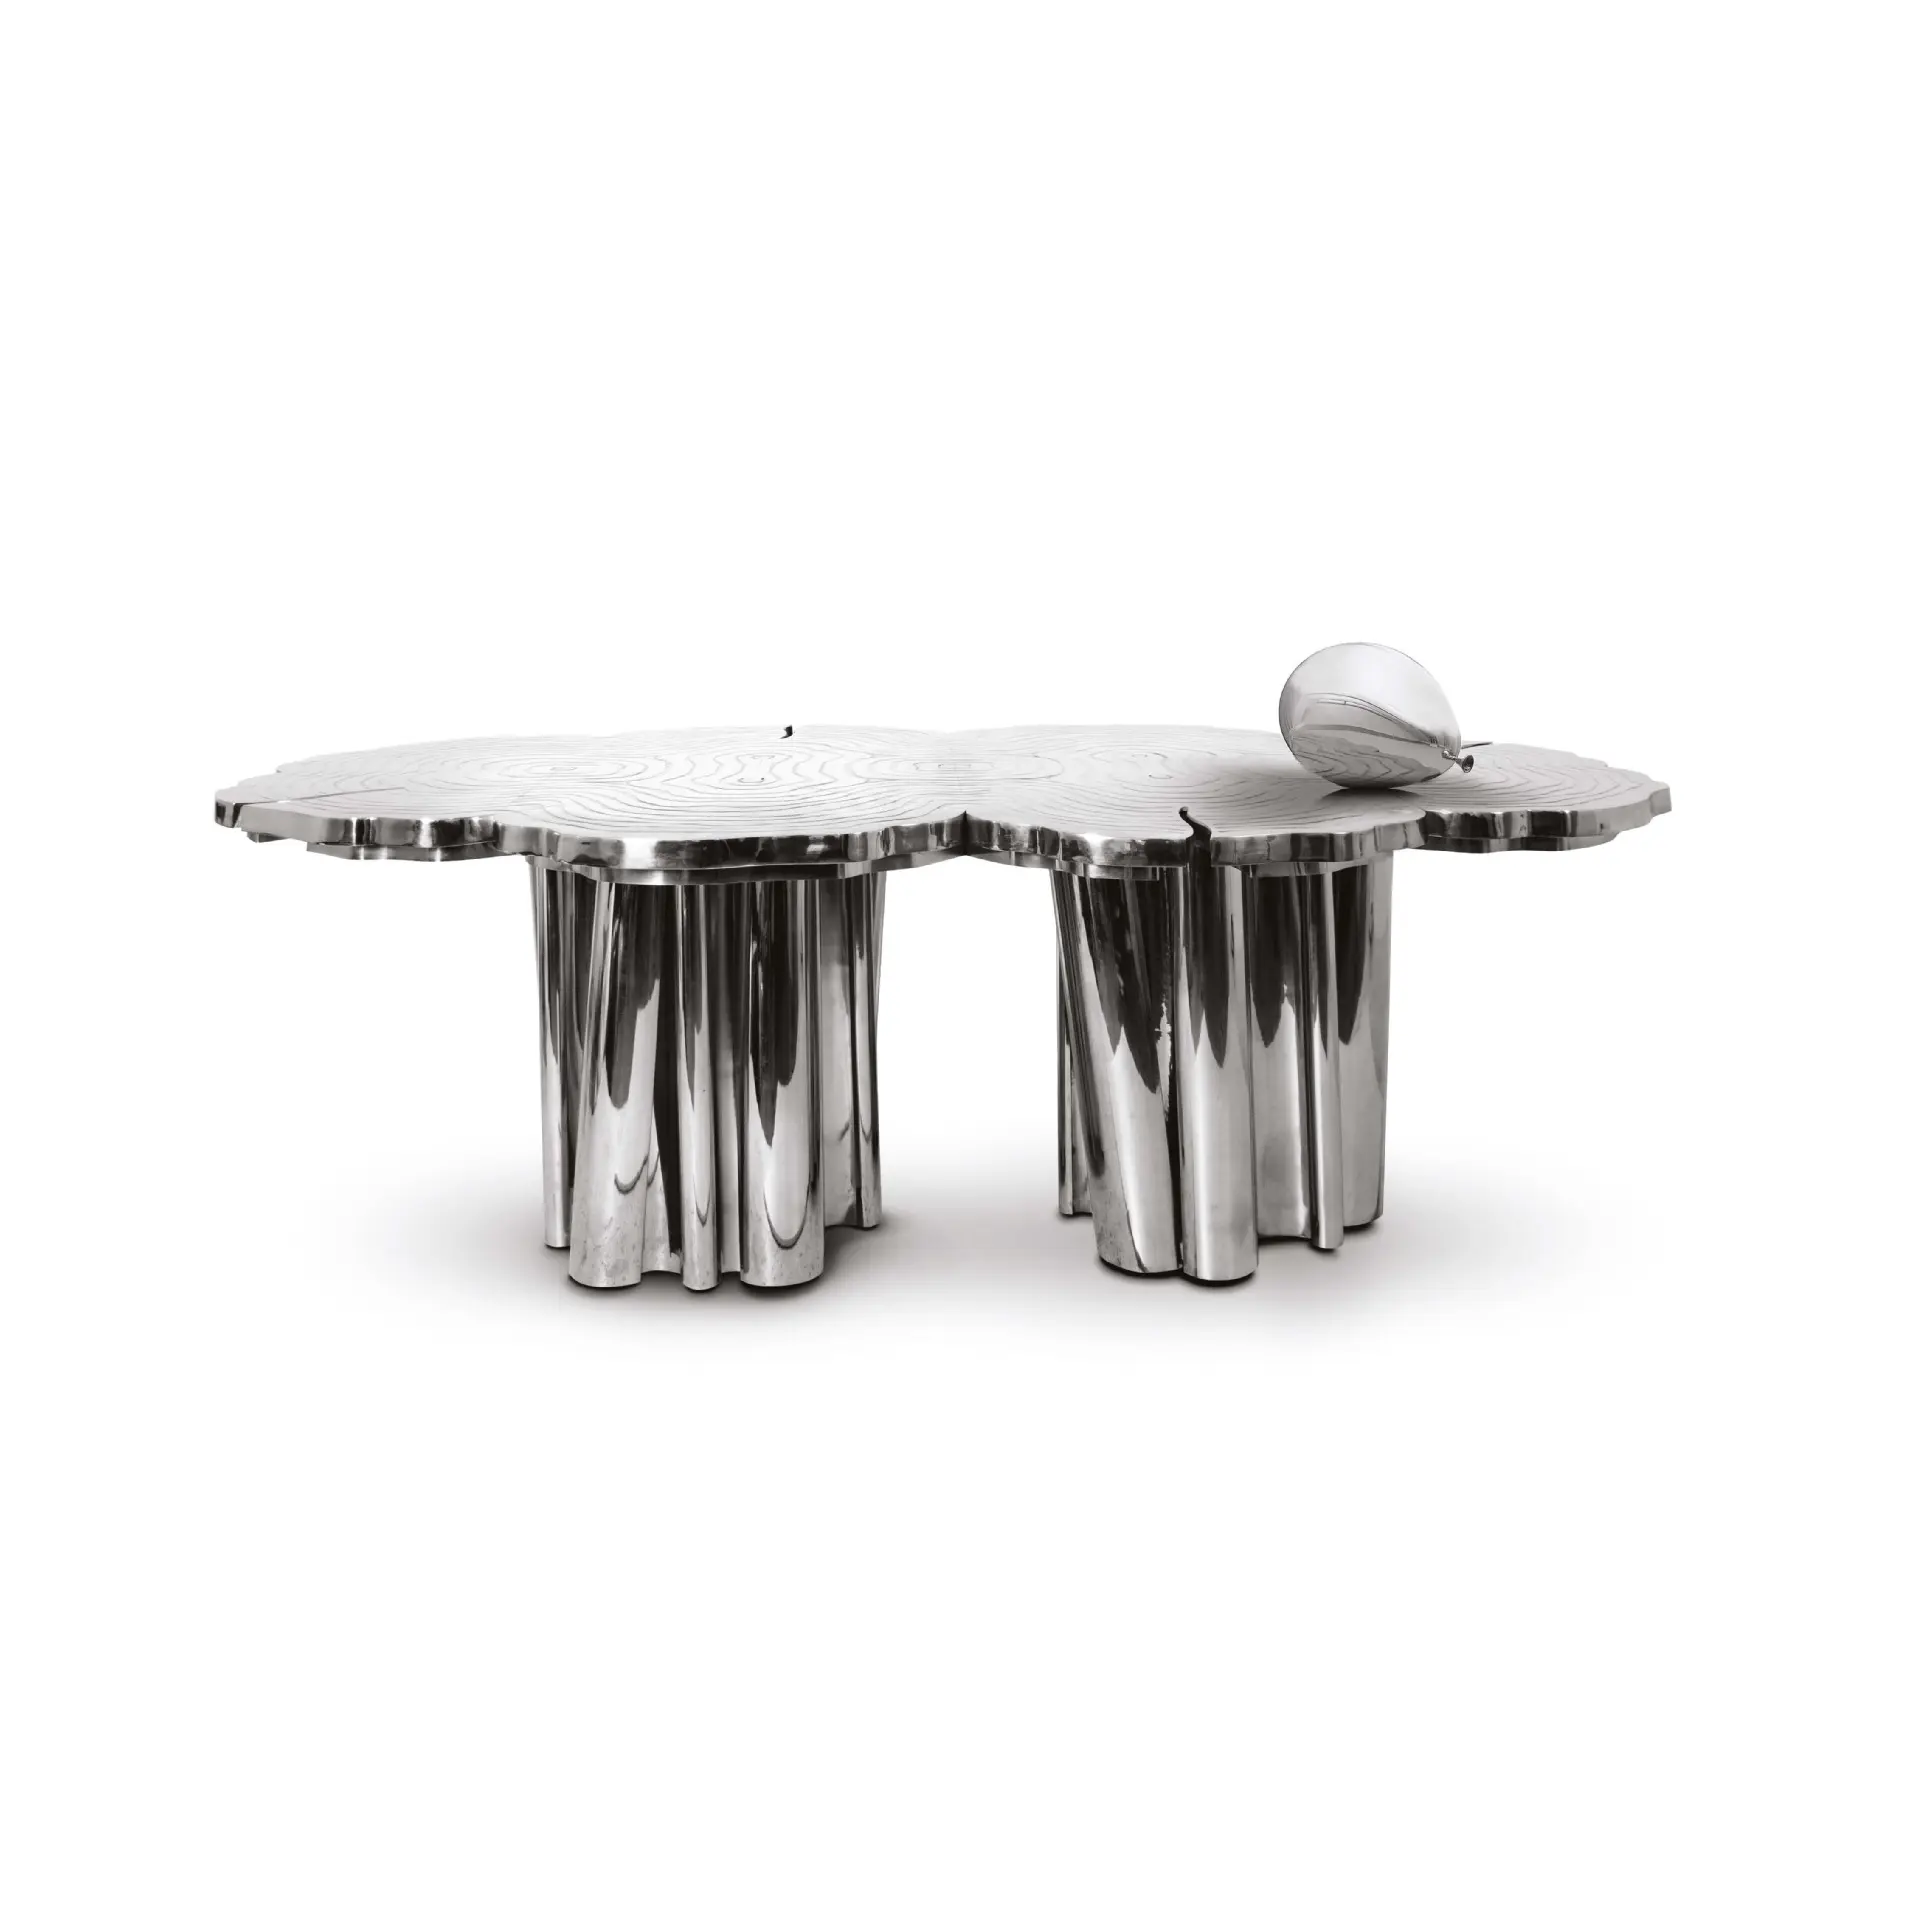 Mesa italiana ligera de lujo con forma de acero inoxidable, mesa grabada, villa moderna, sala de estar, club, muebles de mesa irregulares